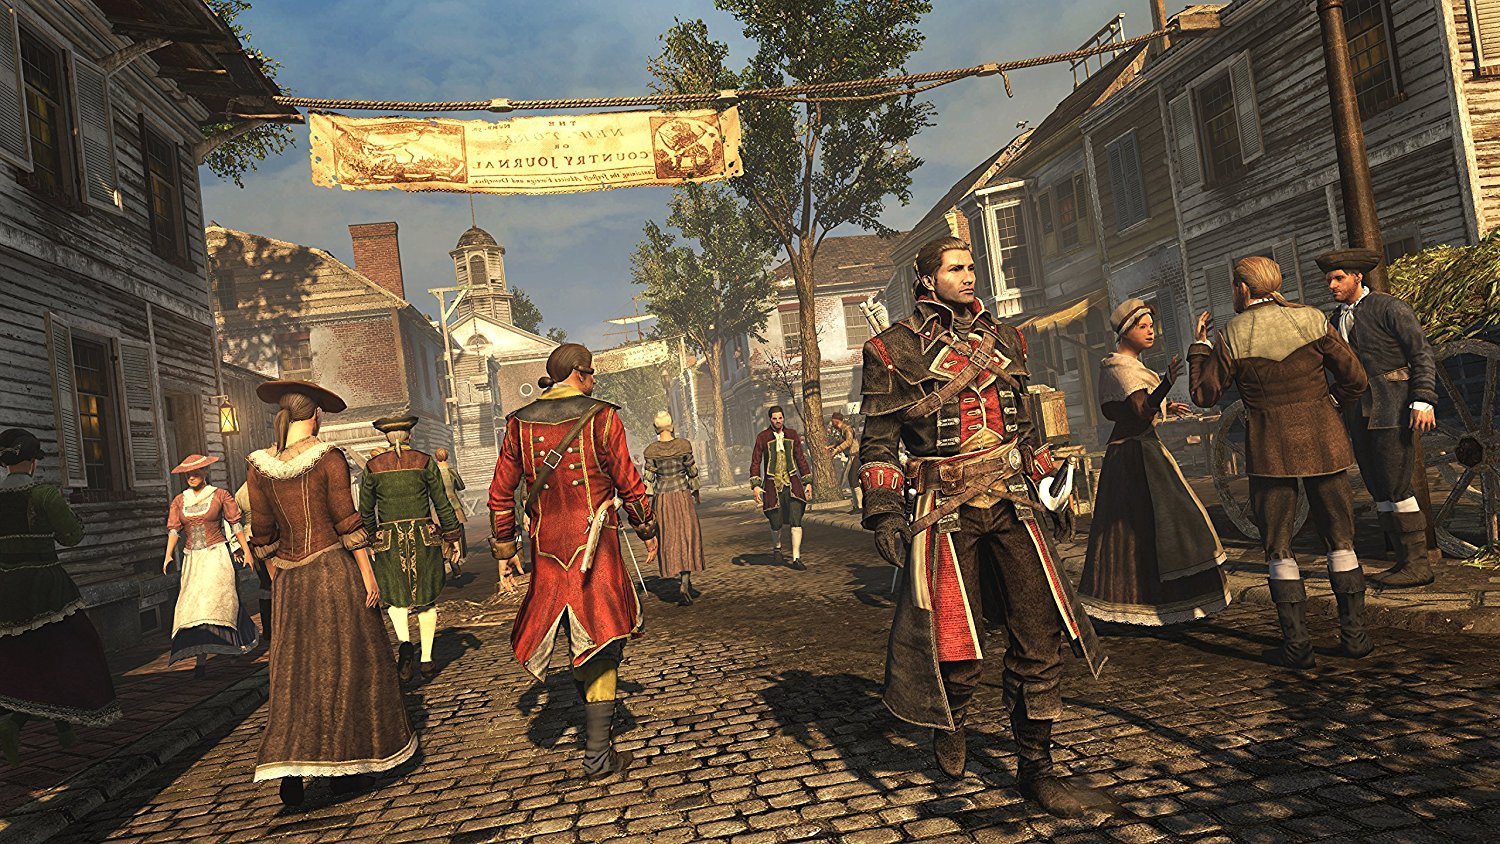 Assassin's Creed: Rogue Remastered (PS4) Review – Hogan Reviews